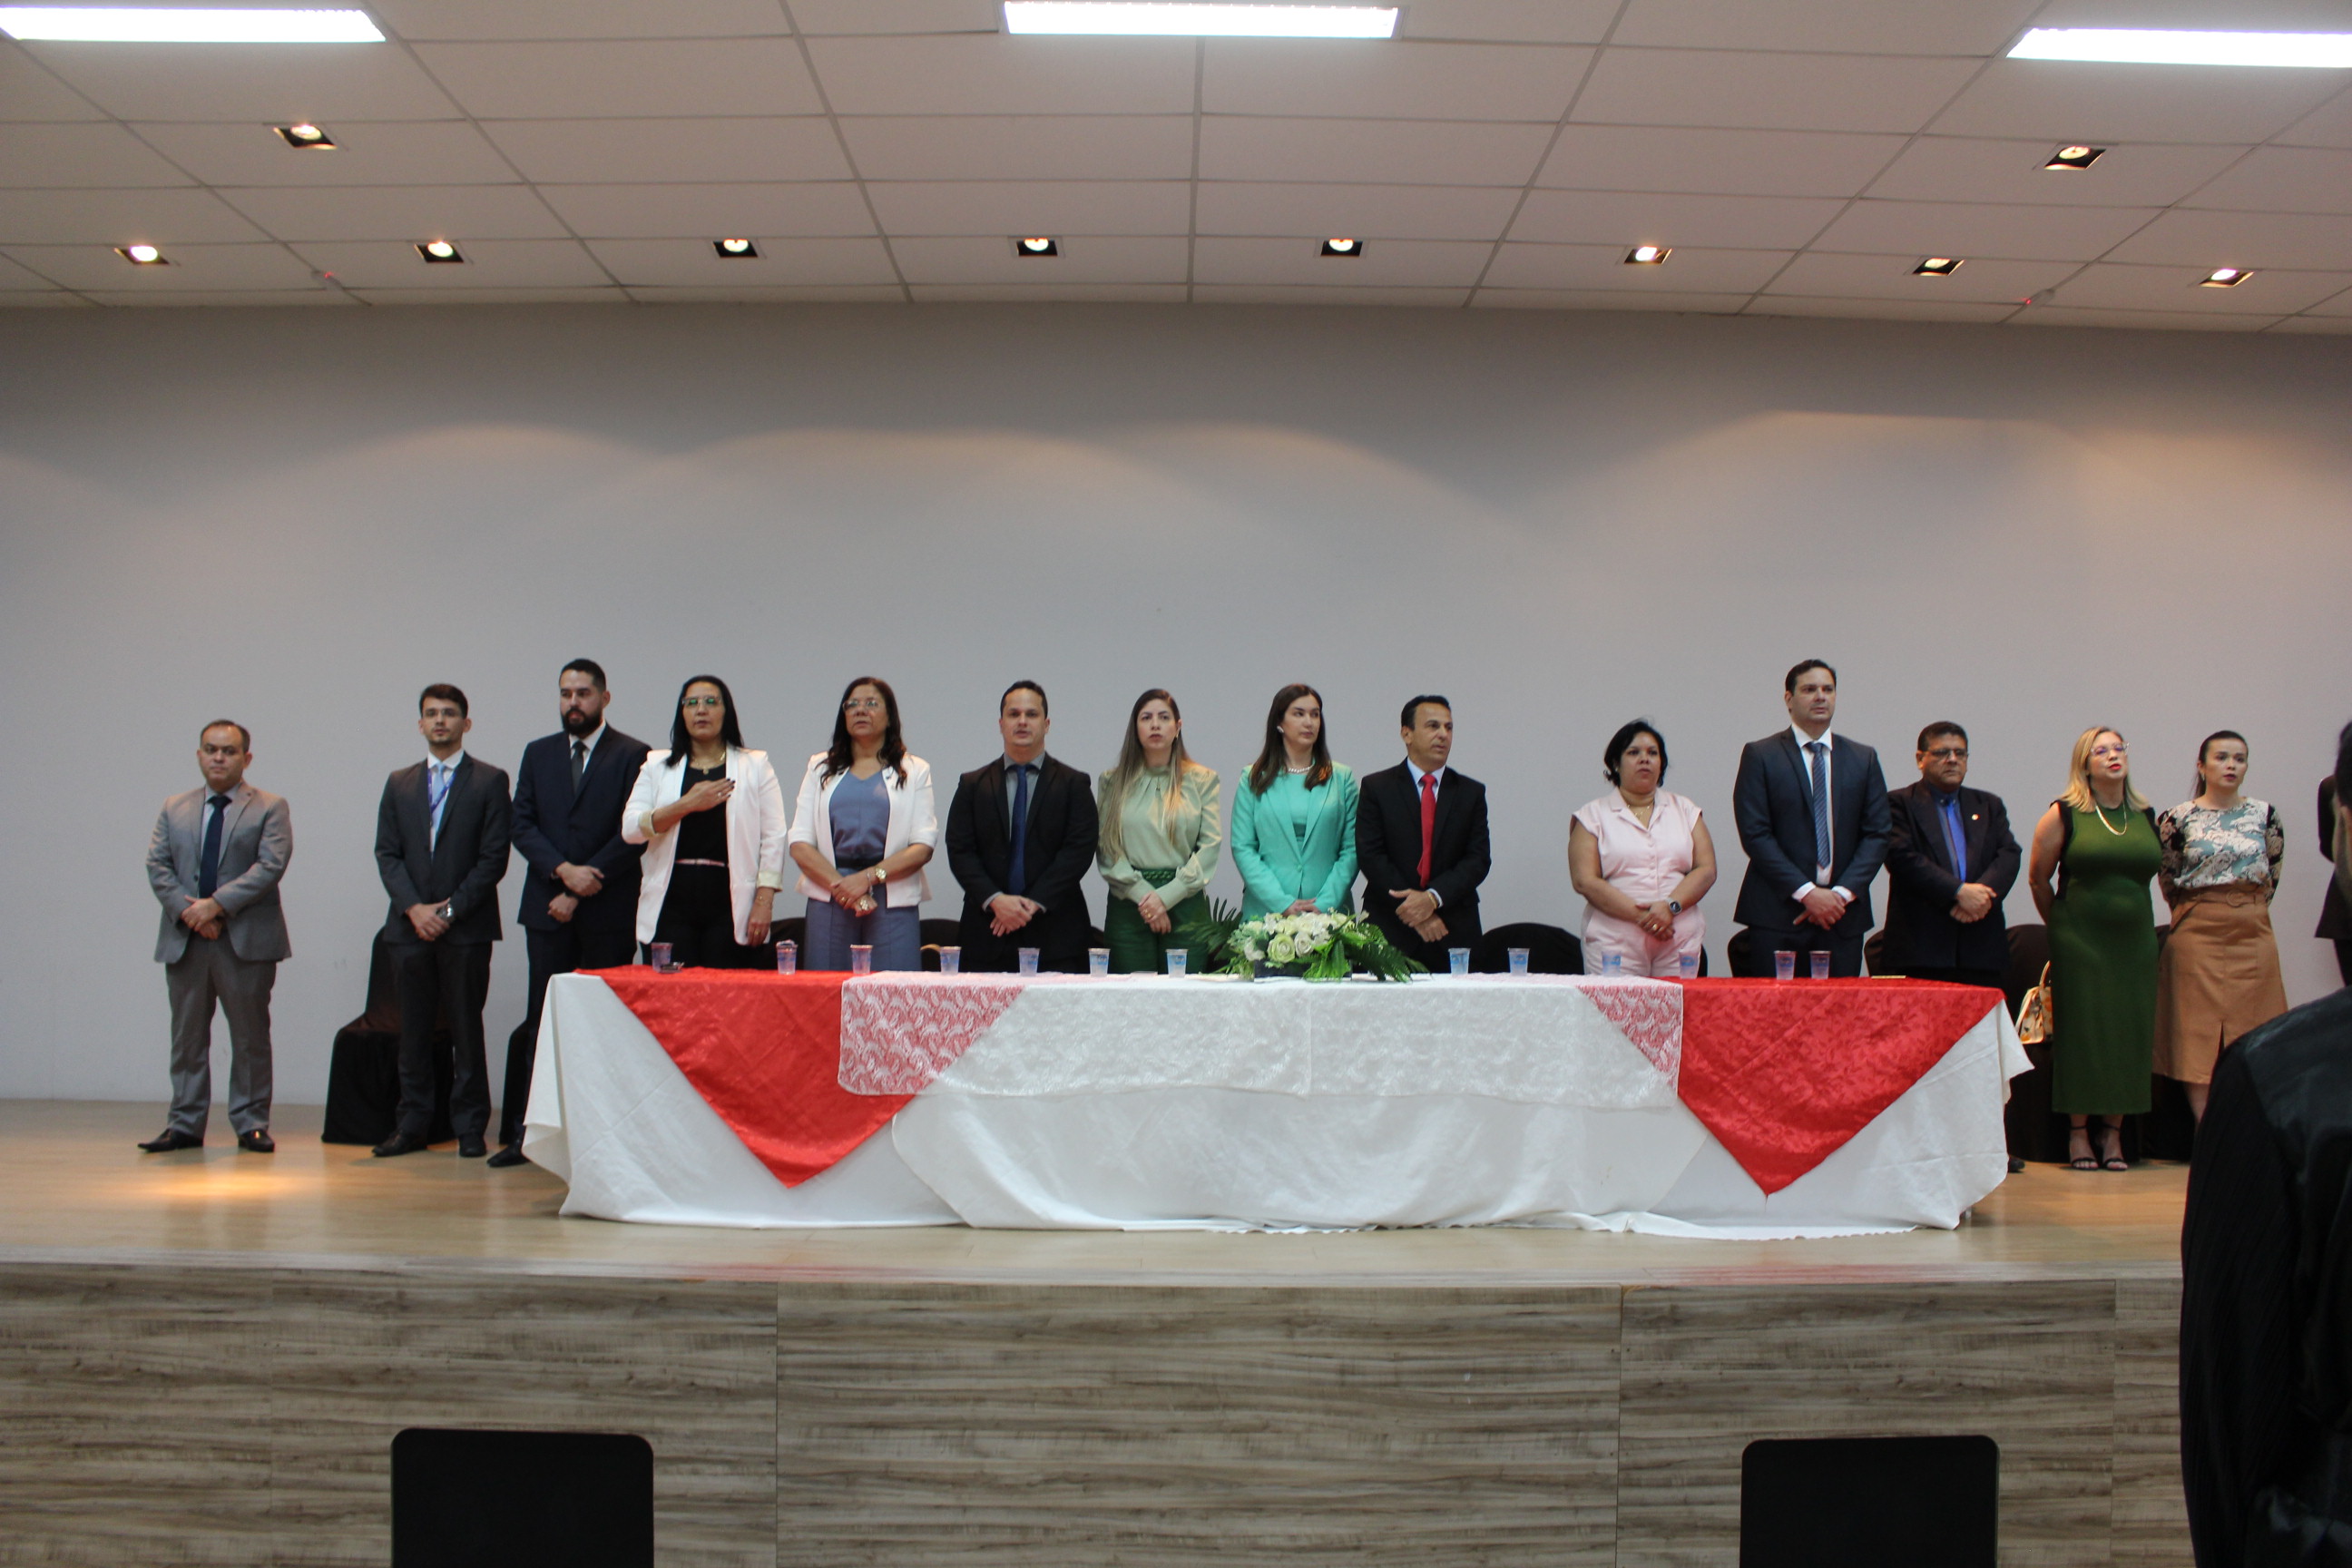 OAB realiza Solenidade de Compromisso de novos Advogados e Advogadas no Auditório do UniFacema